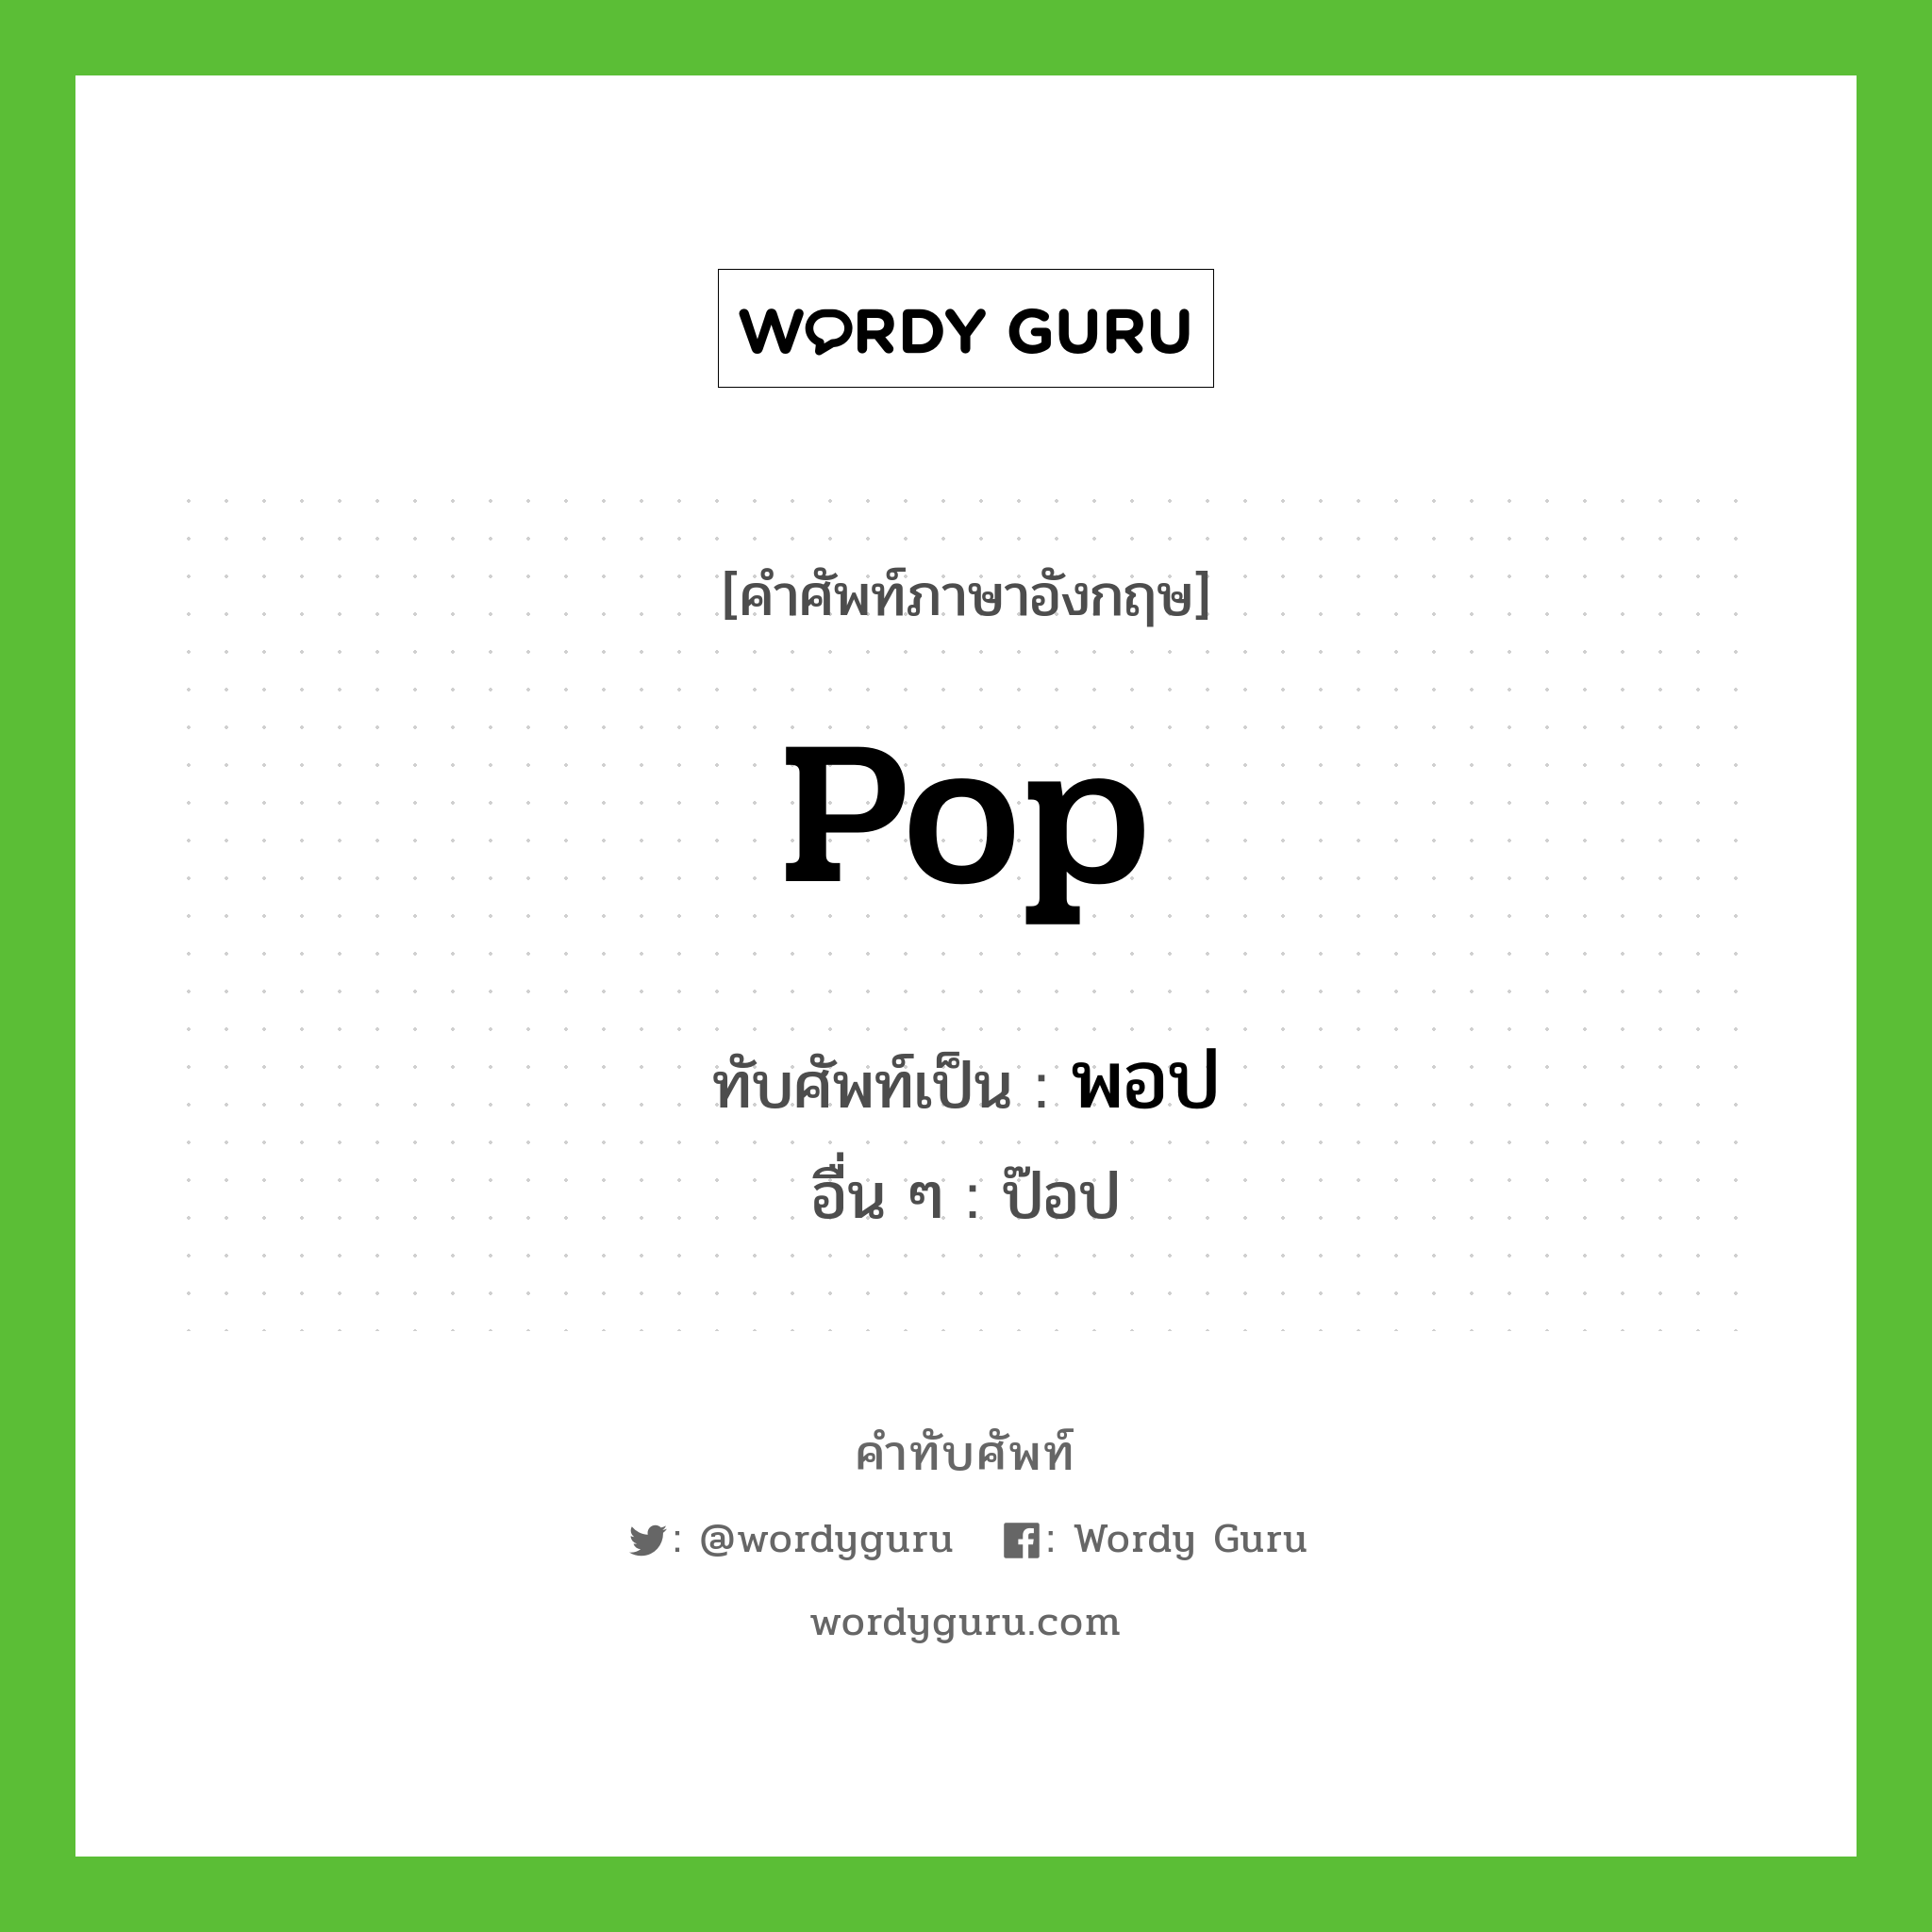 pop เขียนเป็นคำไทยว่าอะไร?, คำศัพท์ภาษาอังกฤษ pop ทับศัพท์เป็น พอป อื่น ๆ ป๊อป